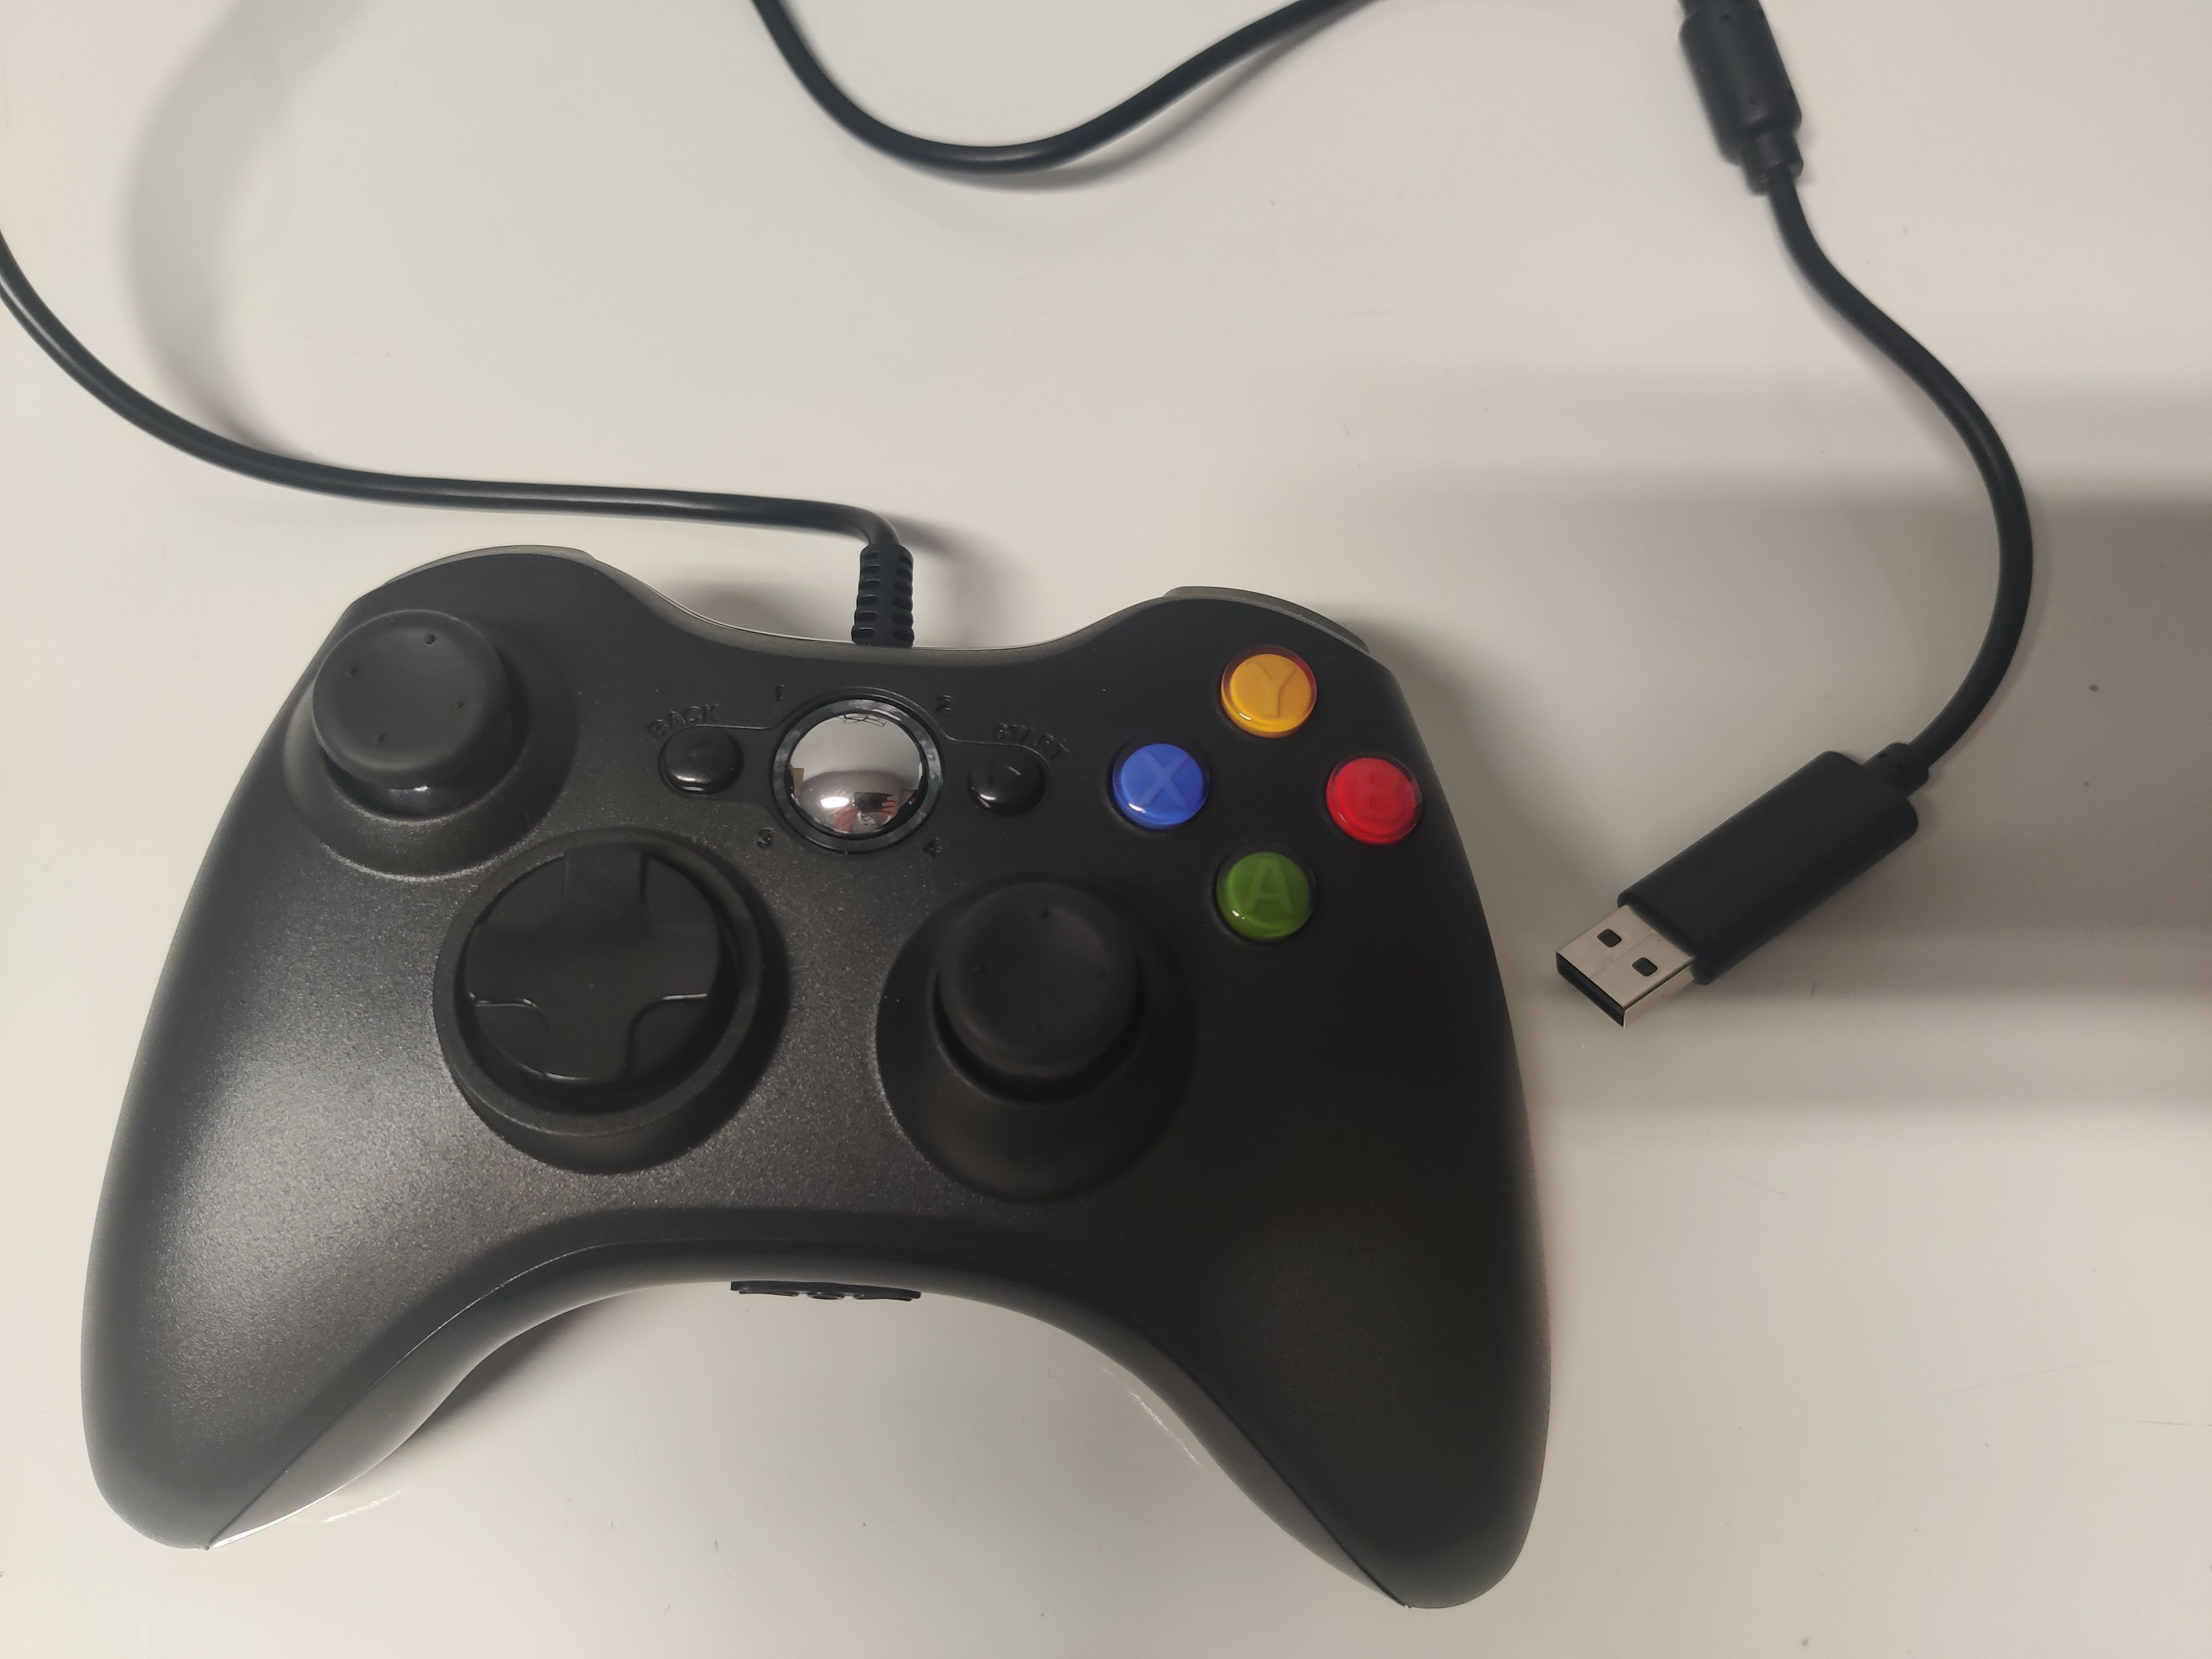 Kontroler przewodowy Diswoe Xbox 360 Gamepad do PC/Xbox 360